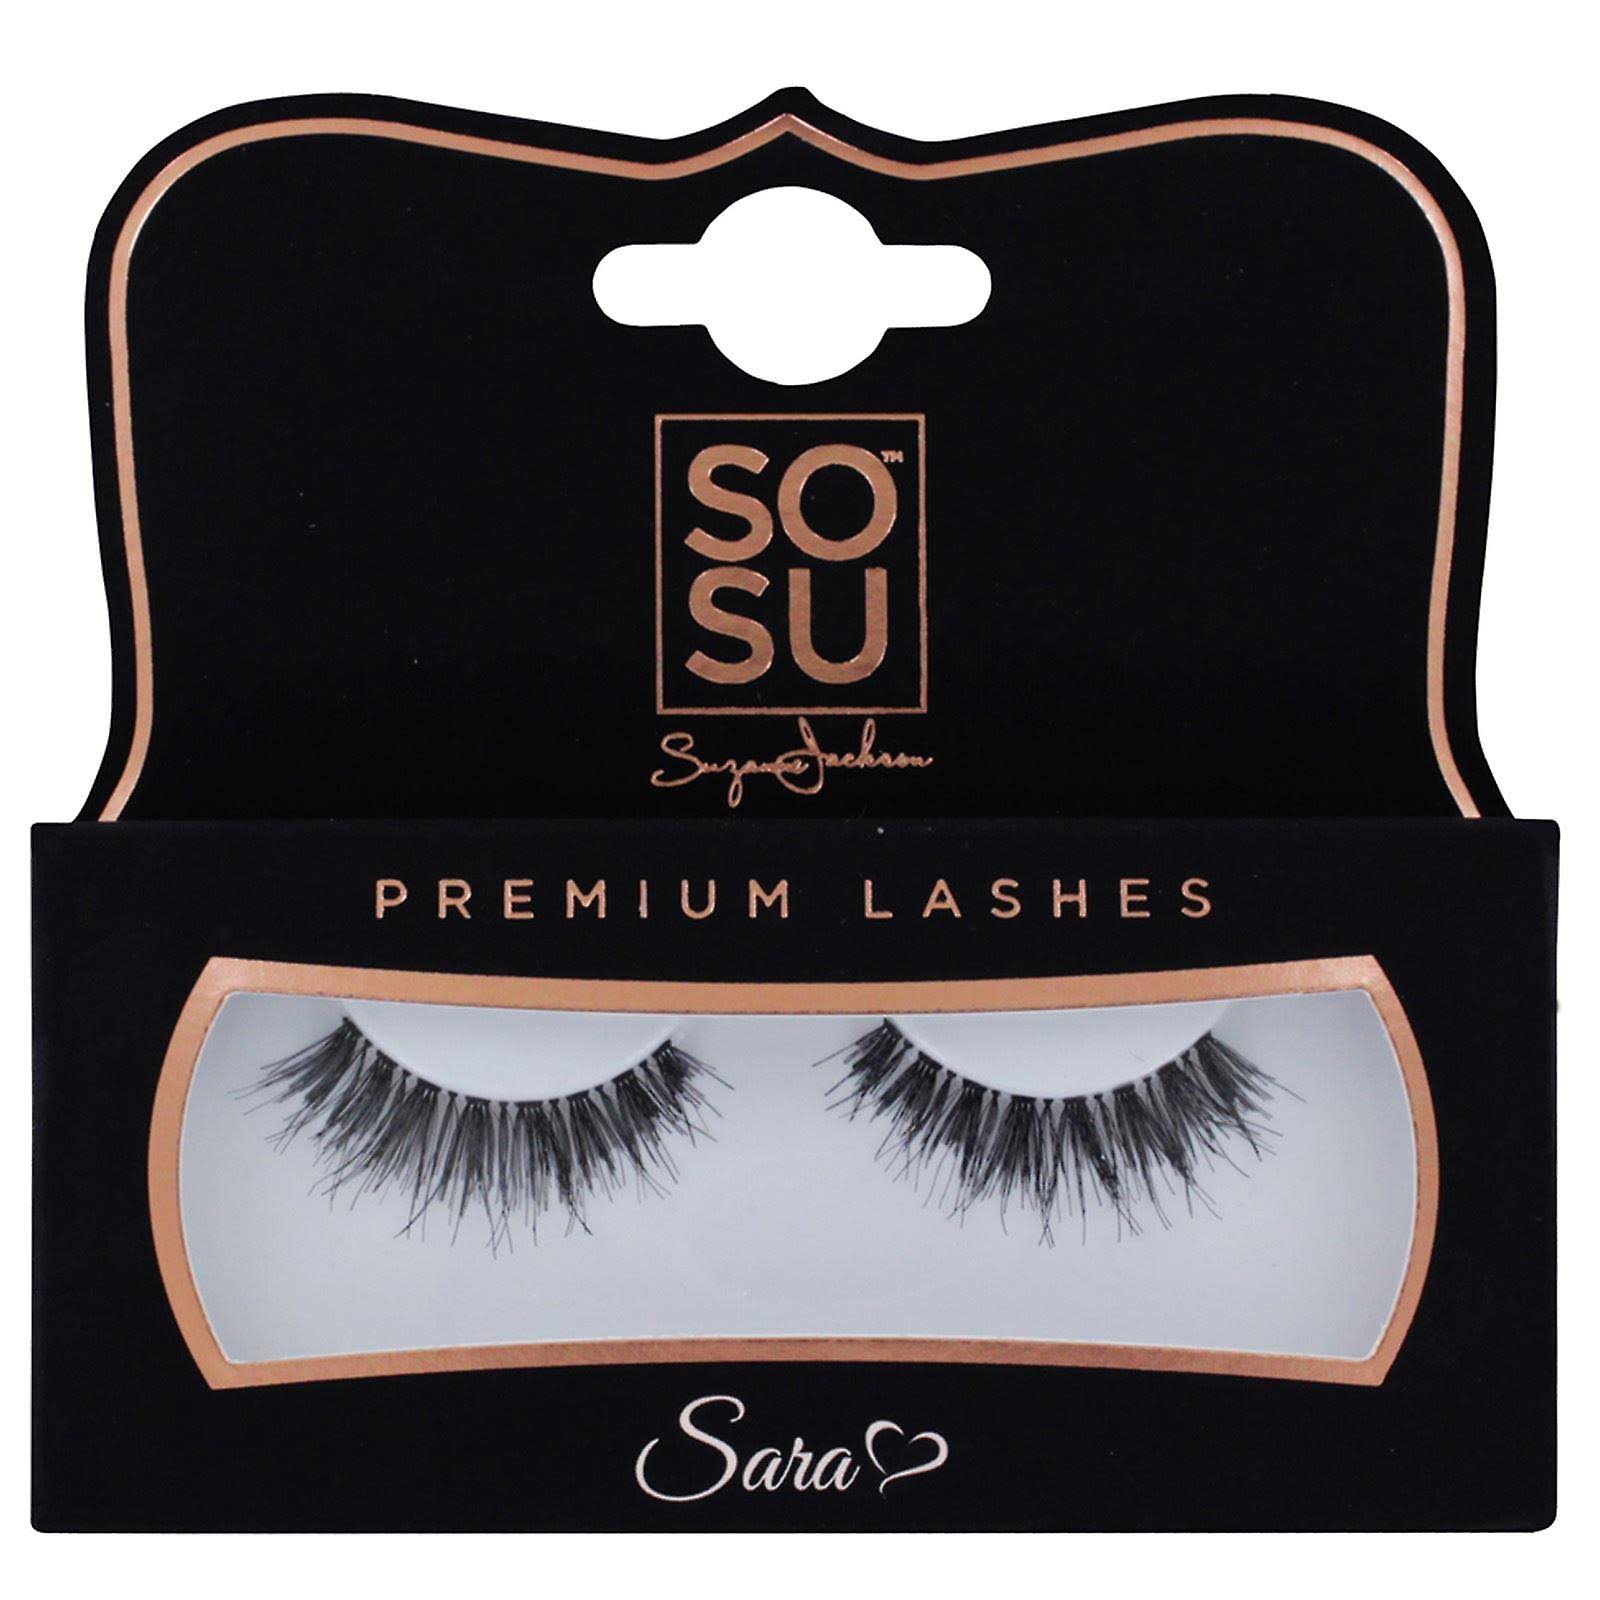 SOSU Premium Lashes - Sara